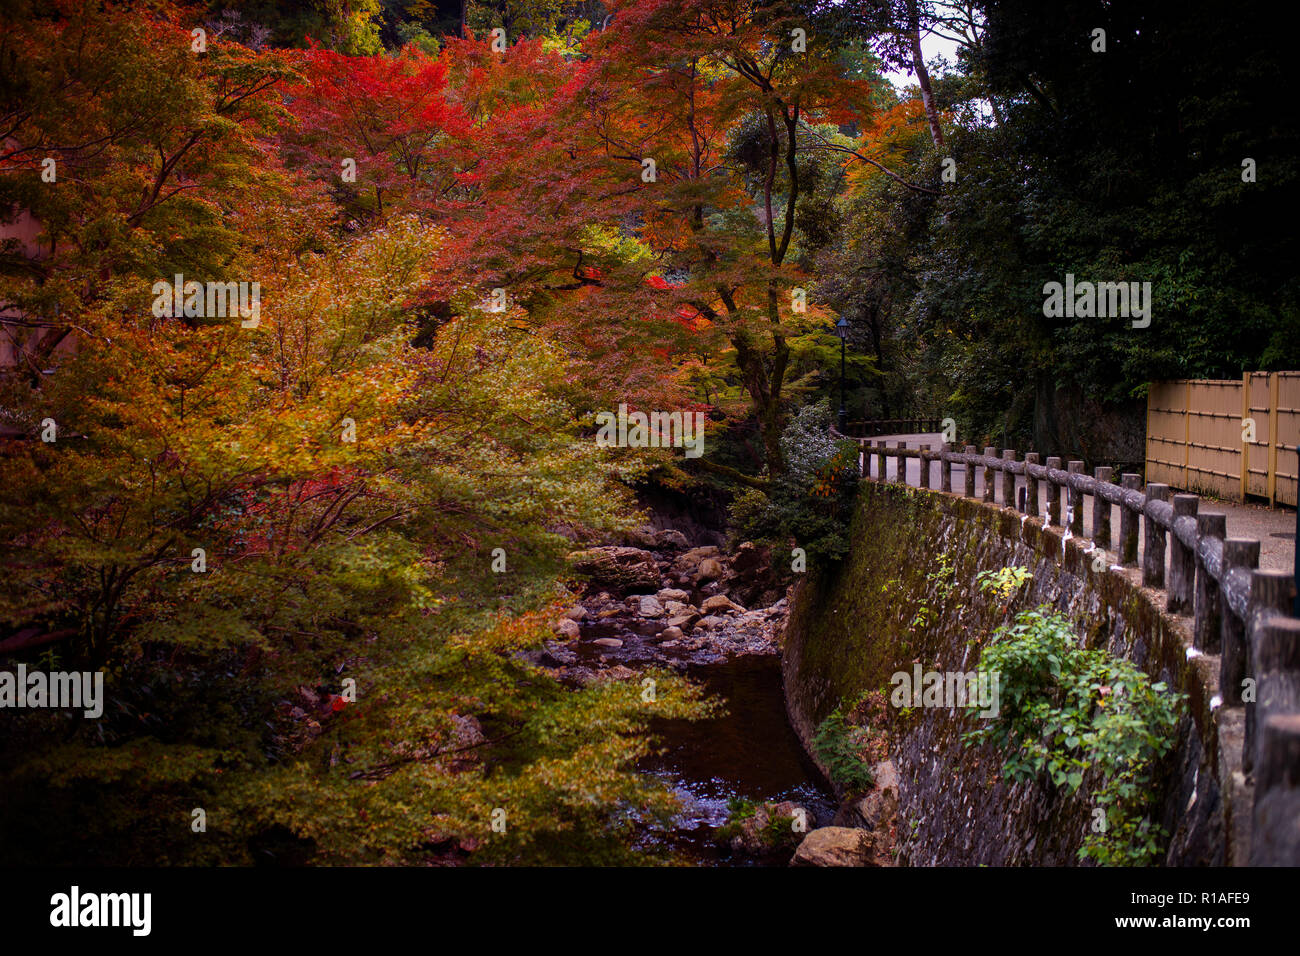 Mino falls une destination de voyage les plus populaires de voir le changement de couleur des feuilles en automne, le Japon Osaka Banque D'Images